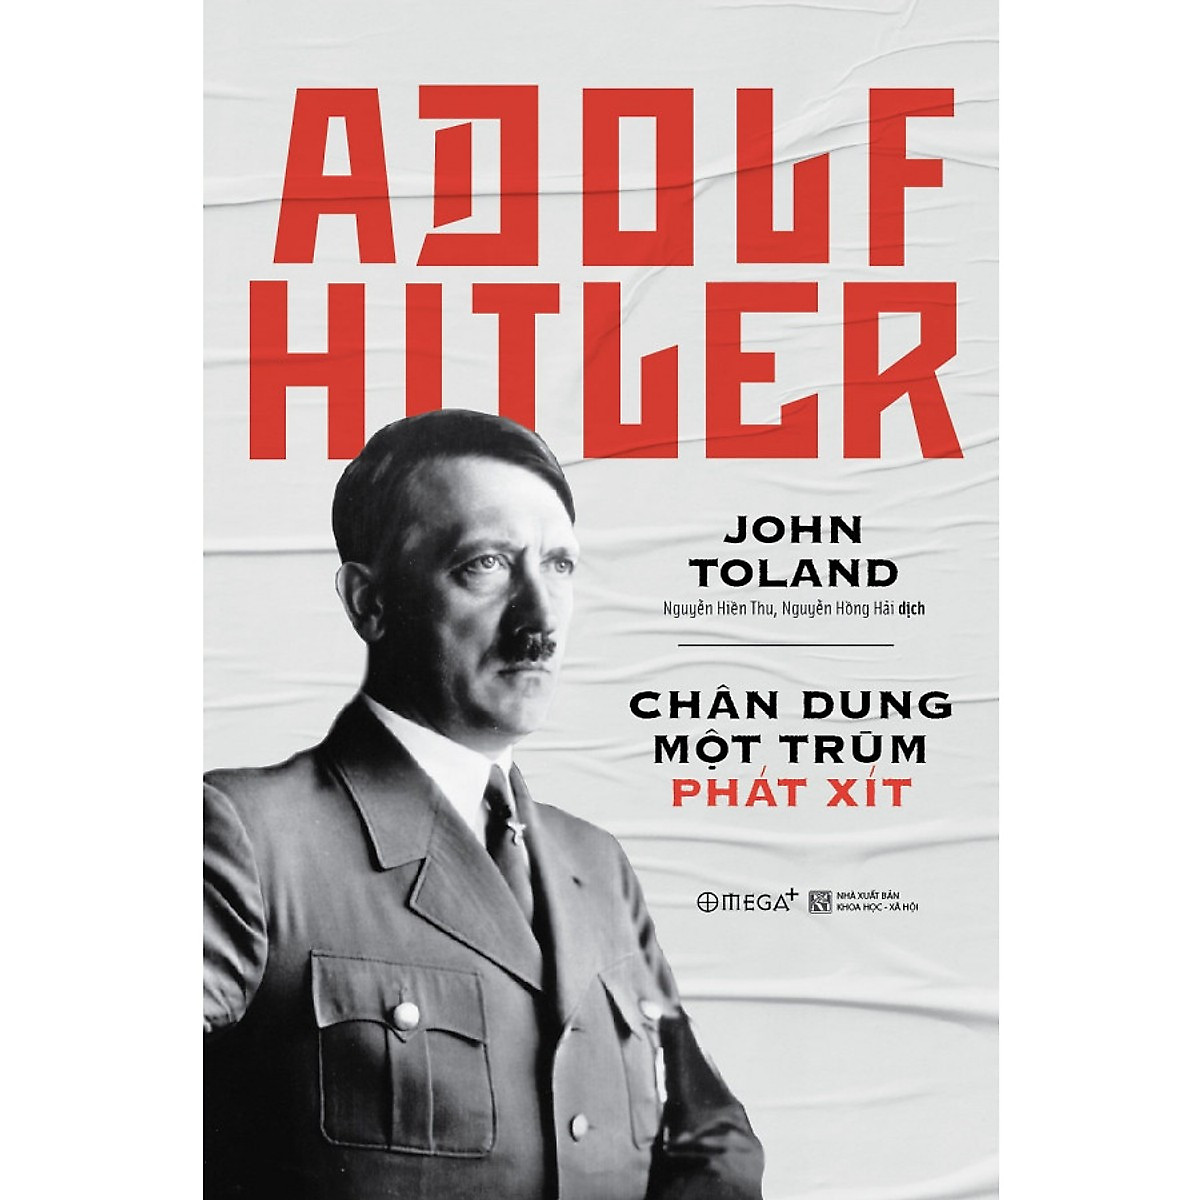 Bộ Sách Chân Dung 2 Nhân Vật Nổi Tiếng Của Nước Đức Thế Kỷ 20 ( Einstein: Cuộc Đời Và Vũ Trụ + Adolf Hitler: Chân Dung Một Trùm Phát Xít ) tặng kèm bookmark Sáng Tạo